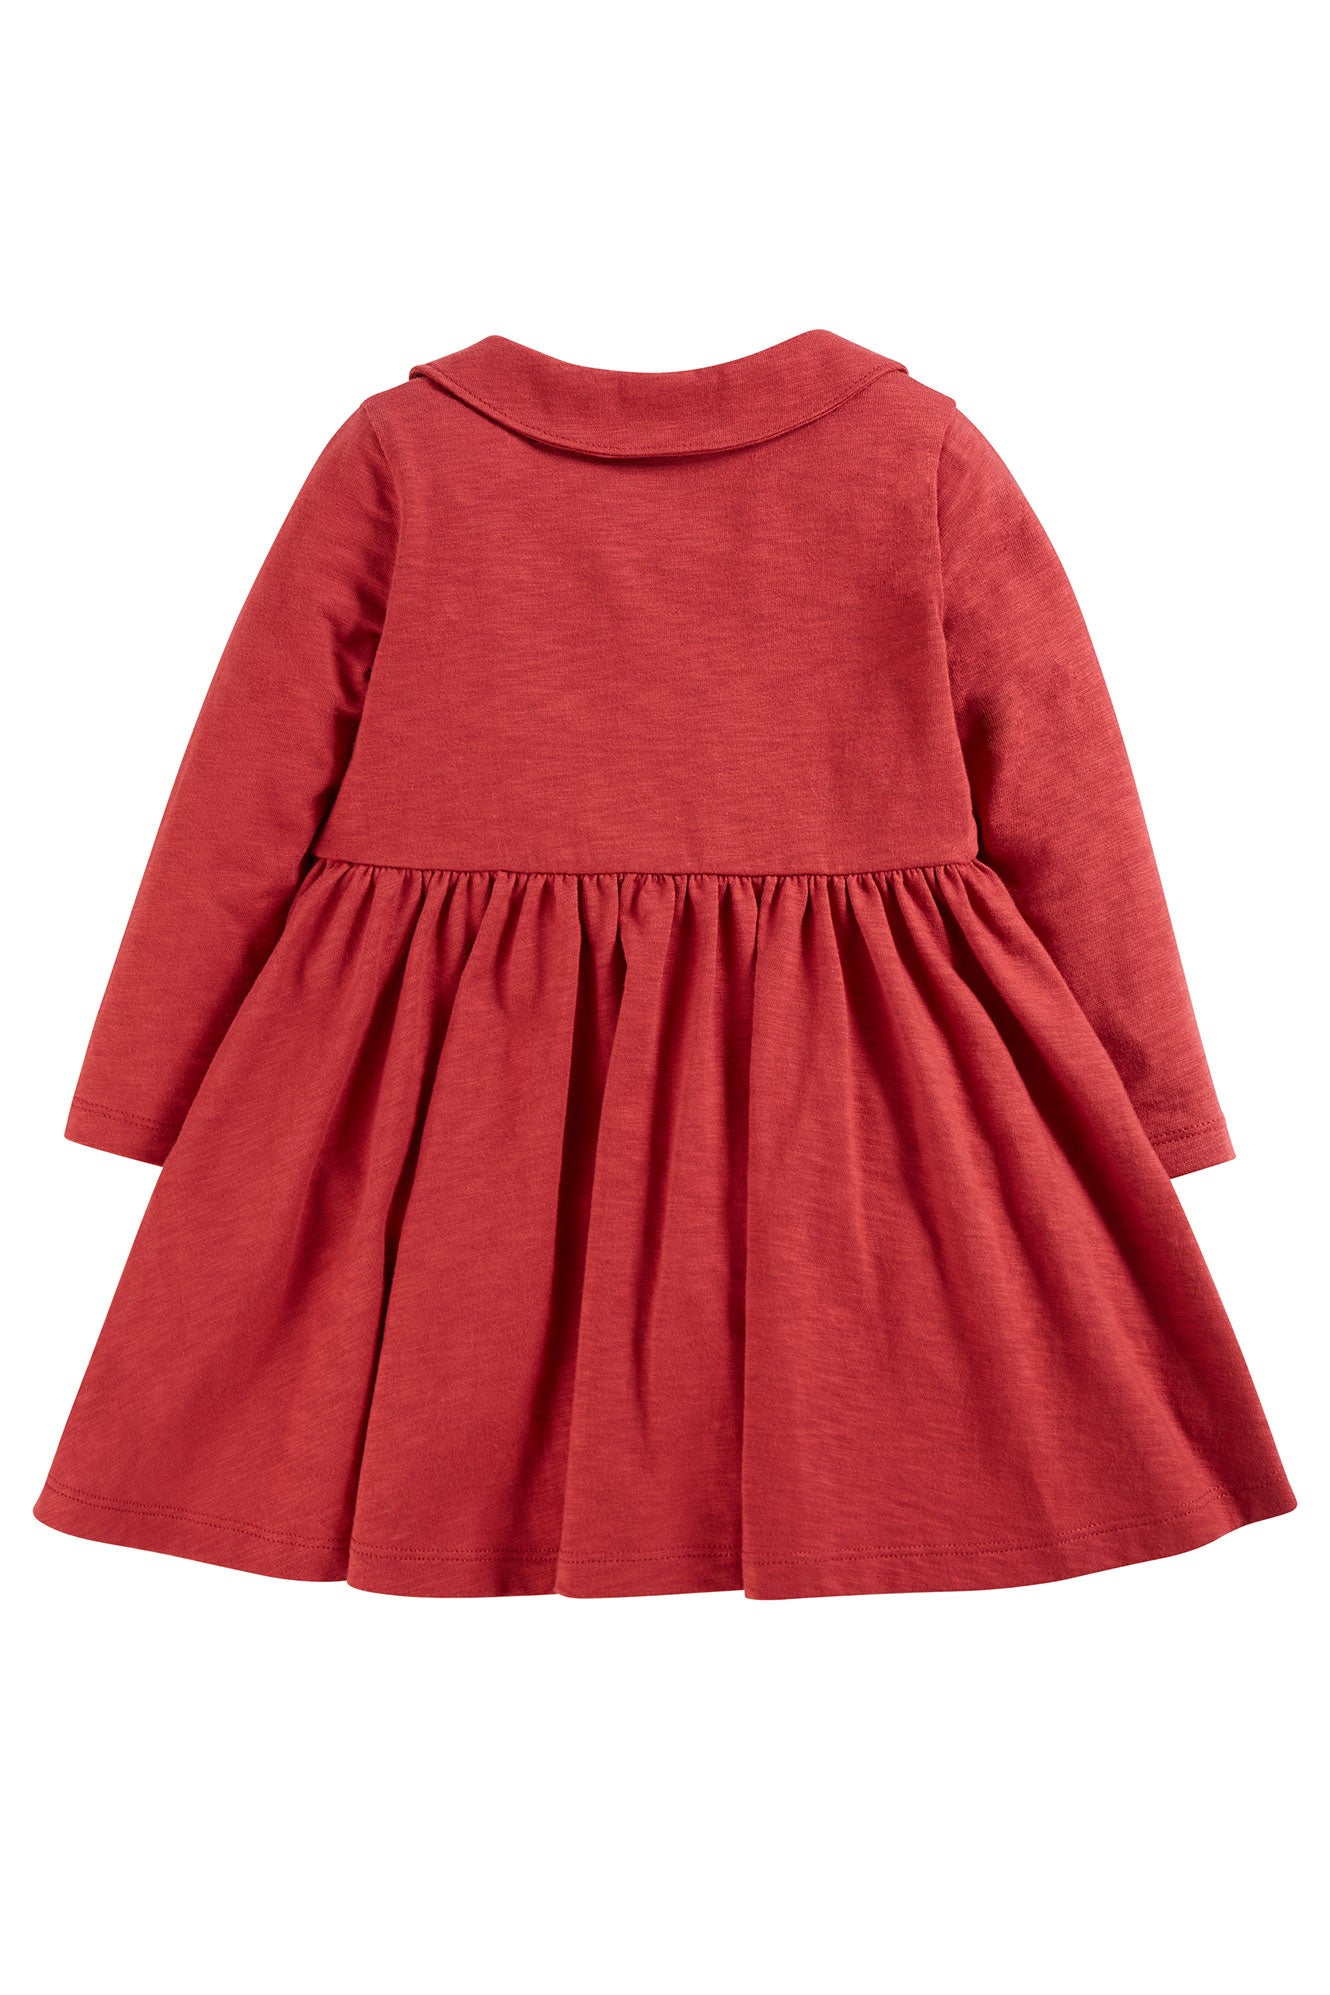 Rosehip Pink - Flowers | Marisa Dress | Long Sleeve Dress | GOTS Organic Cotton